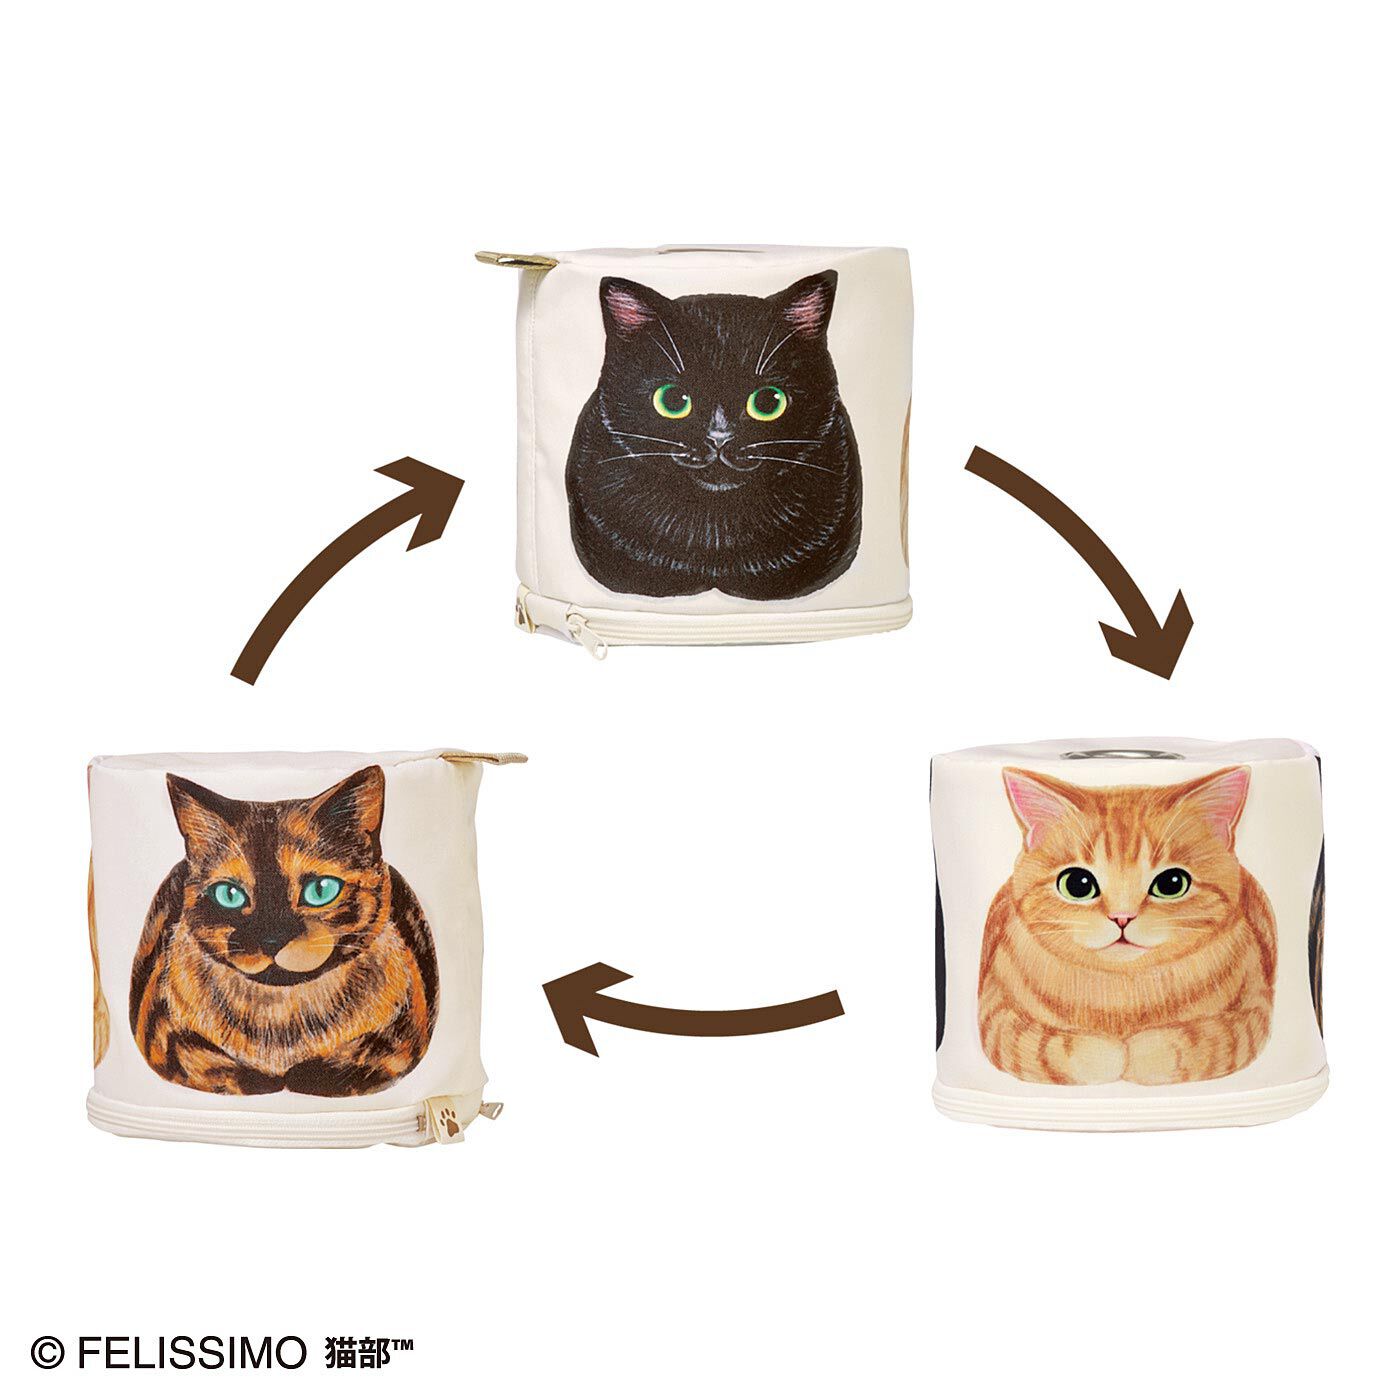 猫部|香箱座り猫さんのロールペーパーホルダーの会|1つのロールに3匹の猫さんがプリントされています。